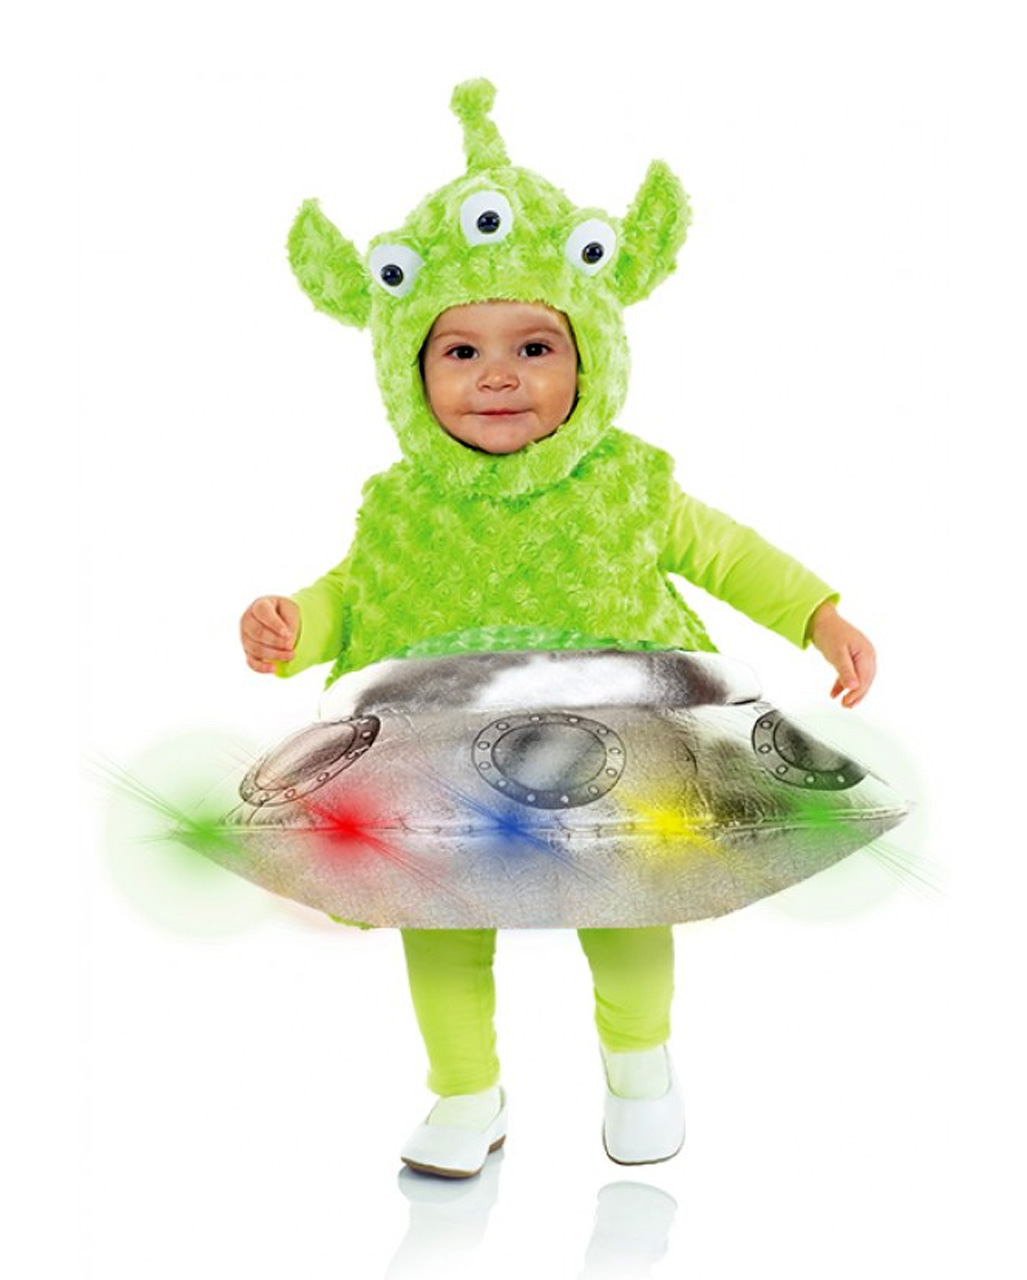 alien mit ufo kleinkinderkostuem alien and ufo toddler costume 38656 01